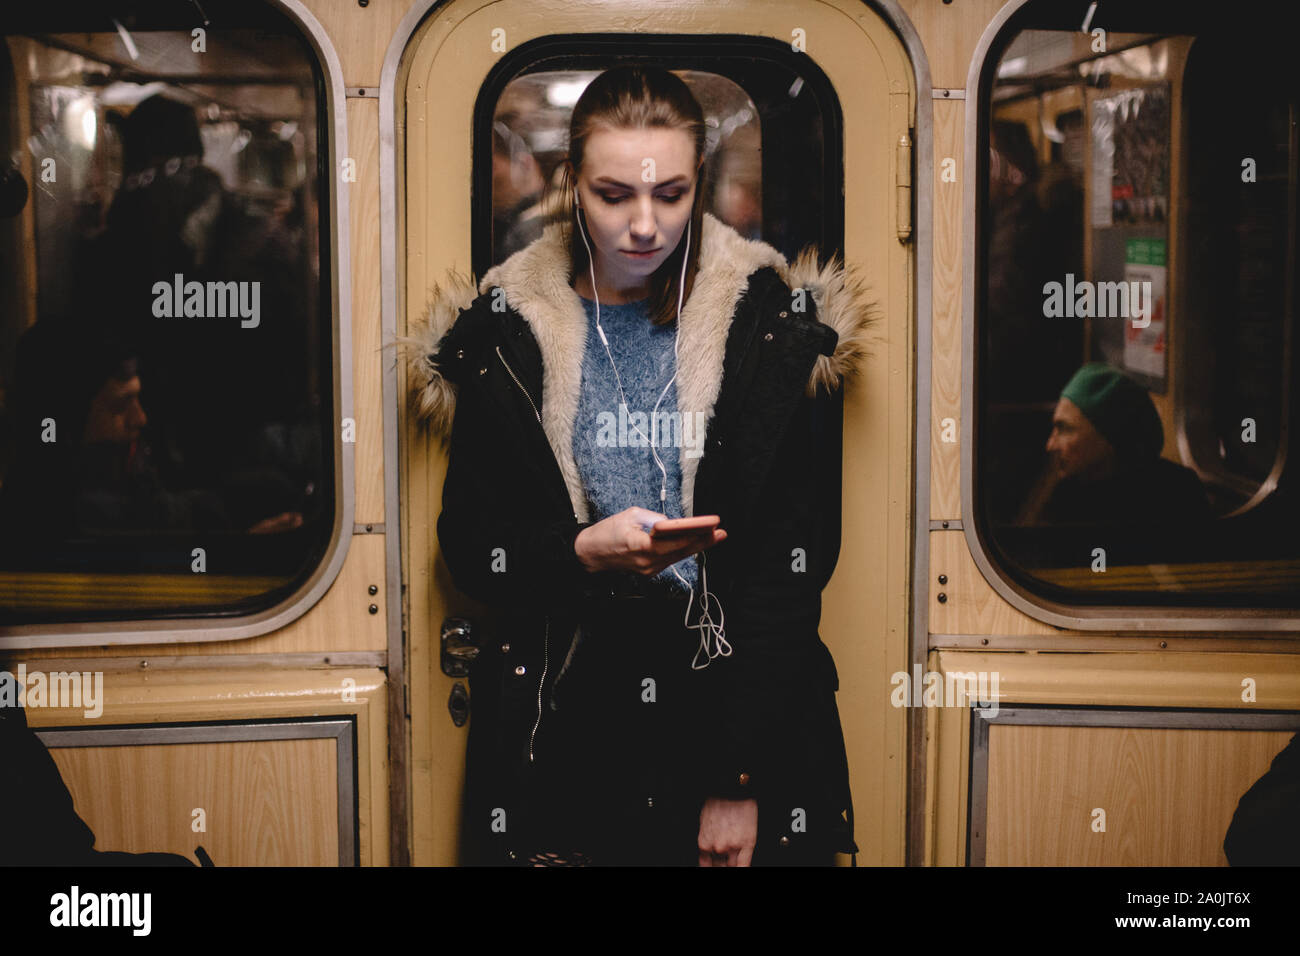 Junge Frau hört Musik auf das Telefon während der Fahrt in der U-Bahn Stockfoto